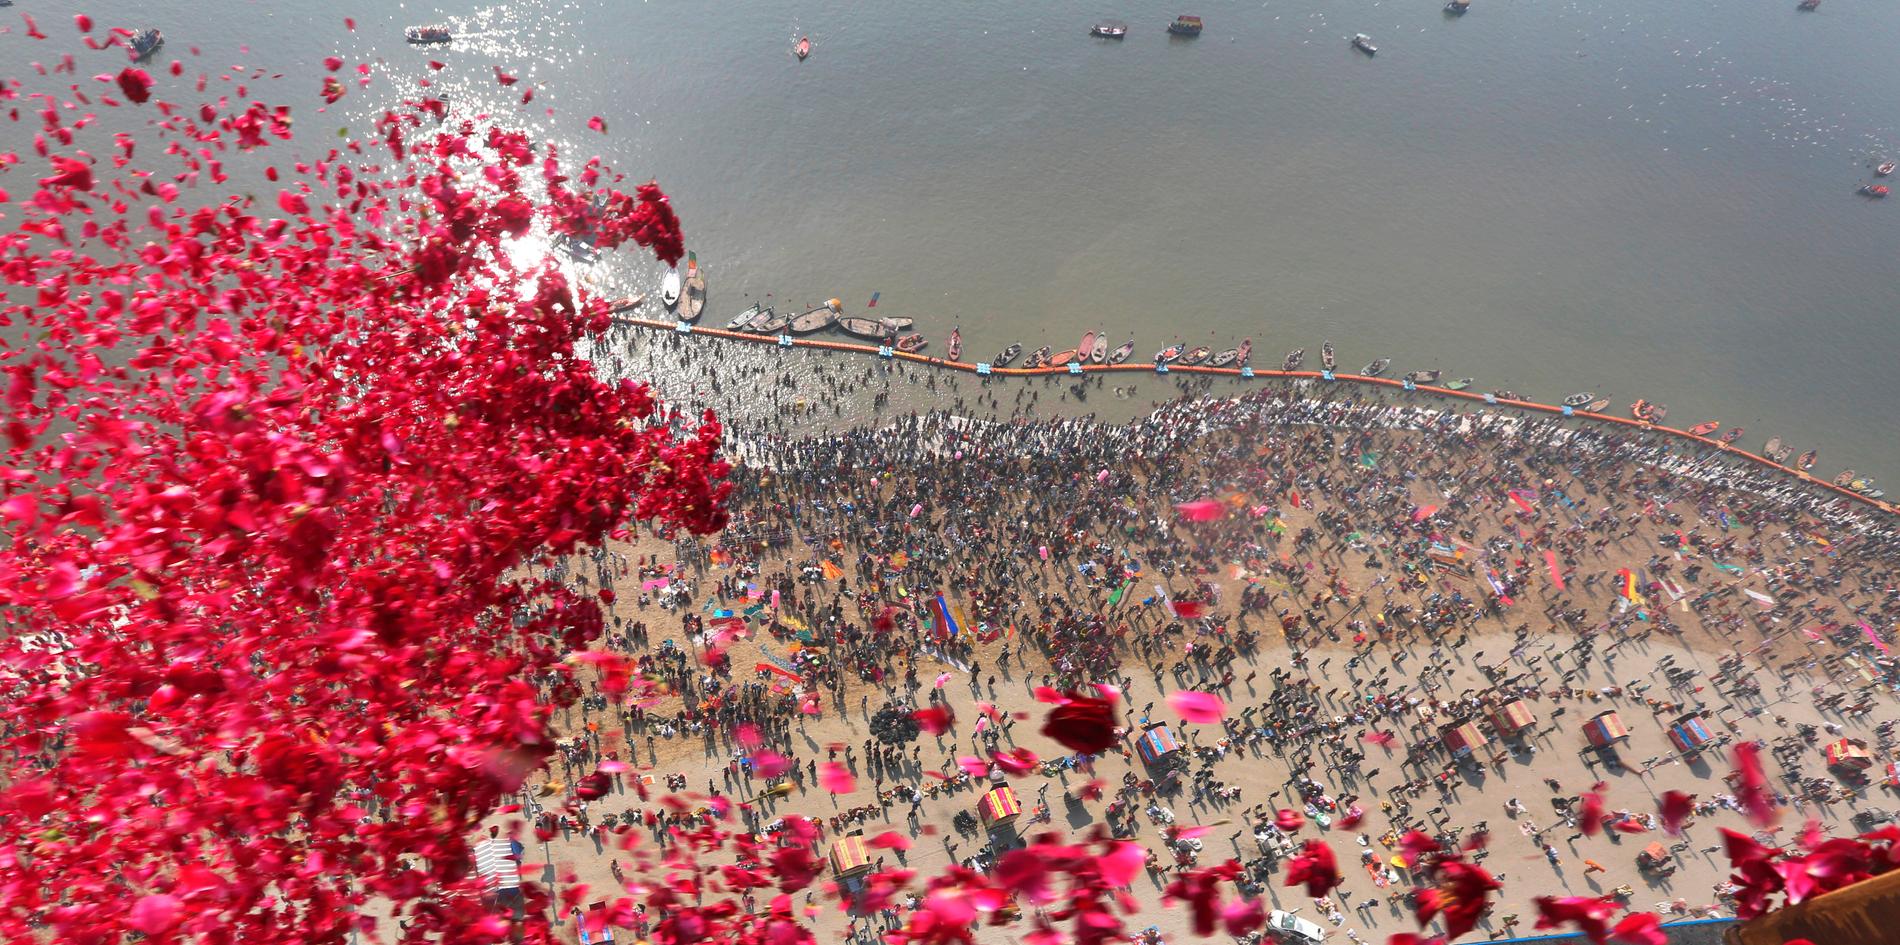 Den religiösa högtiden kumbh mela, då miljontals pilgrimer badar i främst den heliga floden Ganges, pågår i den indiska delstaten Uttar Pradesh. Bilden visar rosenblad som delstatsstyret under måndagen släppte över deltagarna.